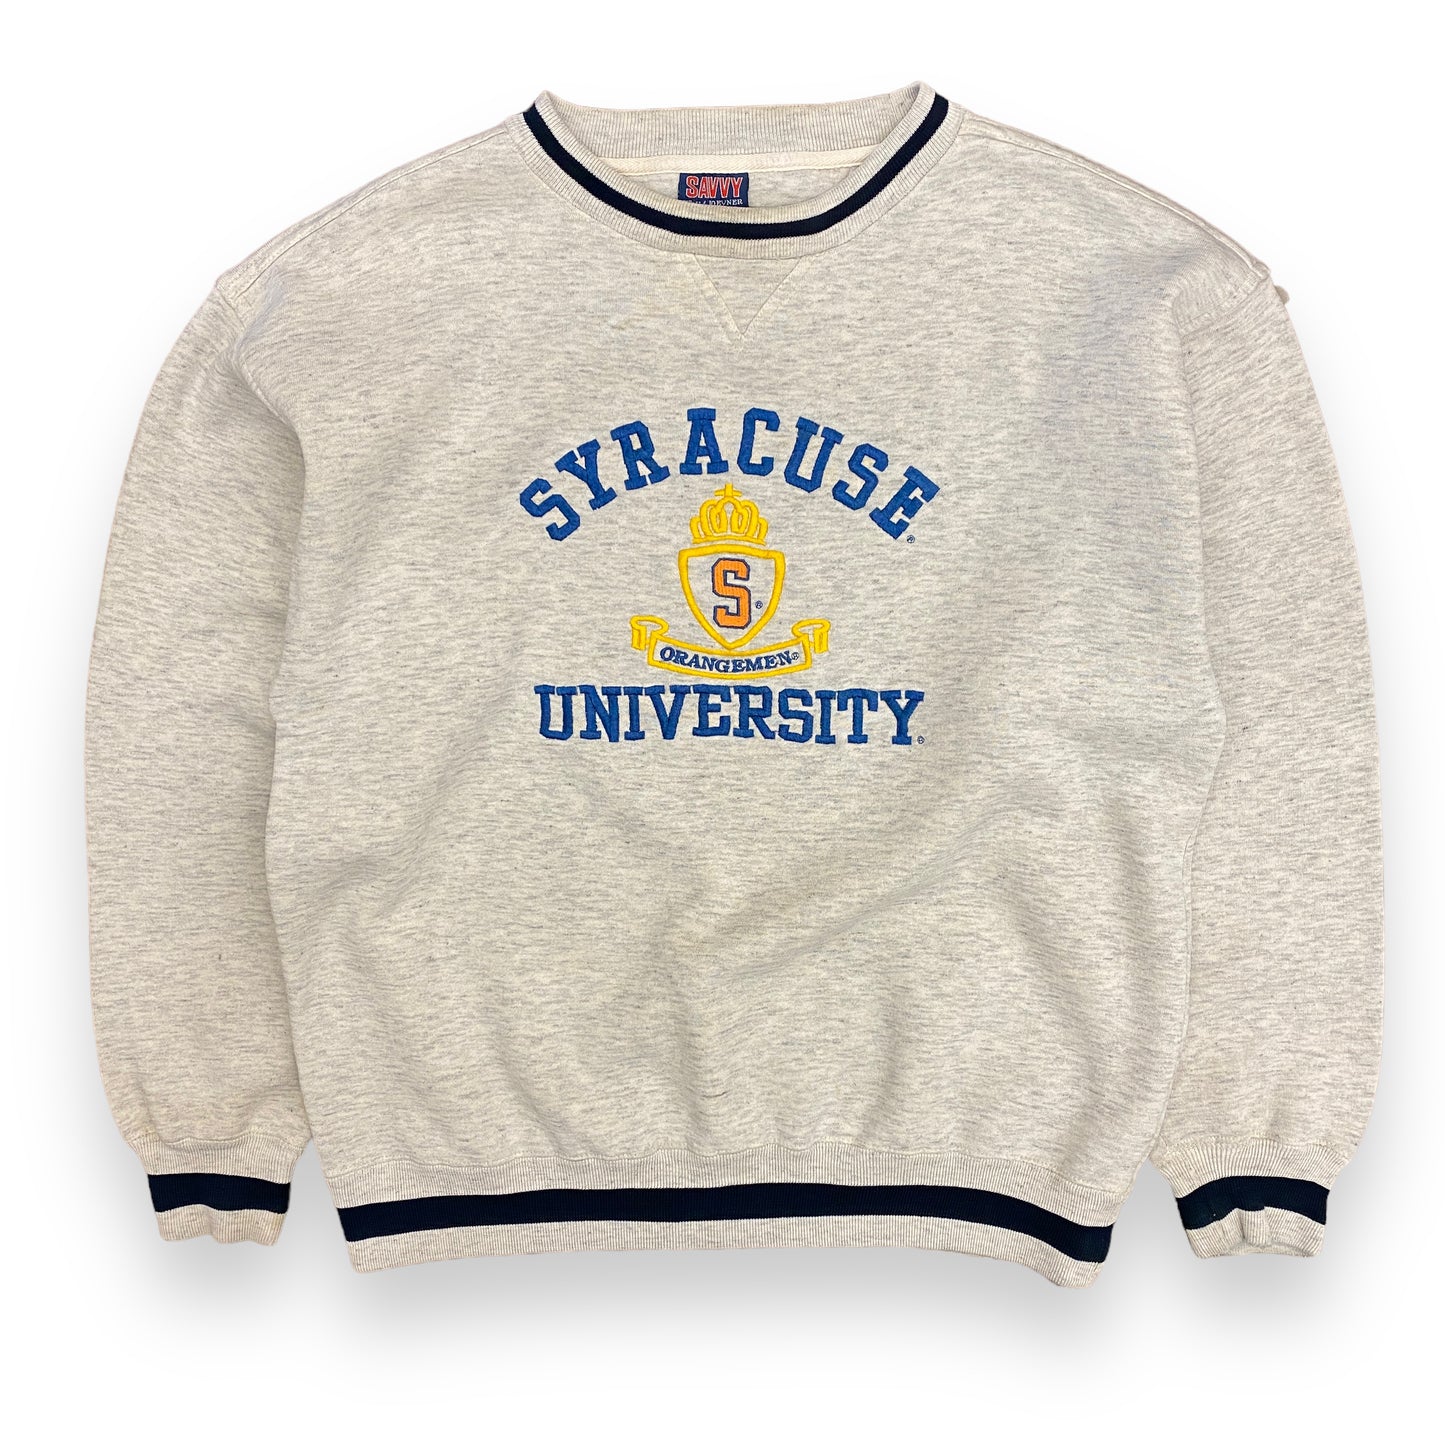 1990s Syracuse University Orangemen Embroidered Sweatshirt - Size Large